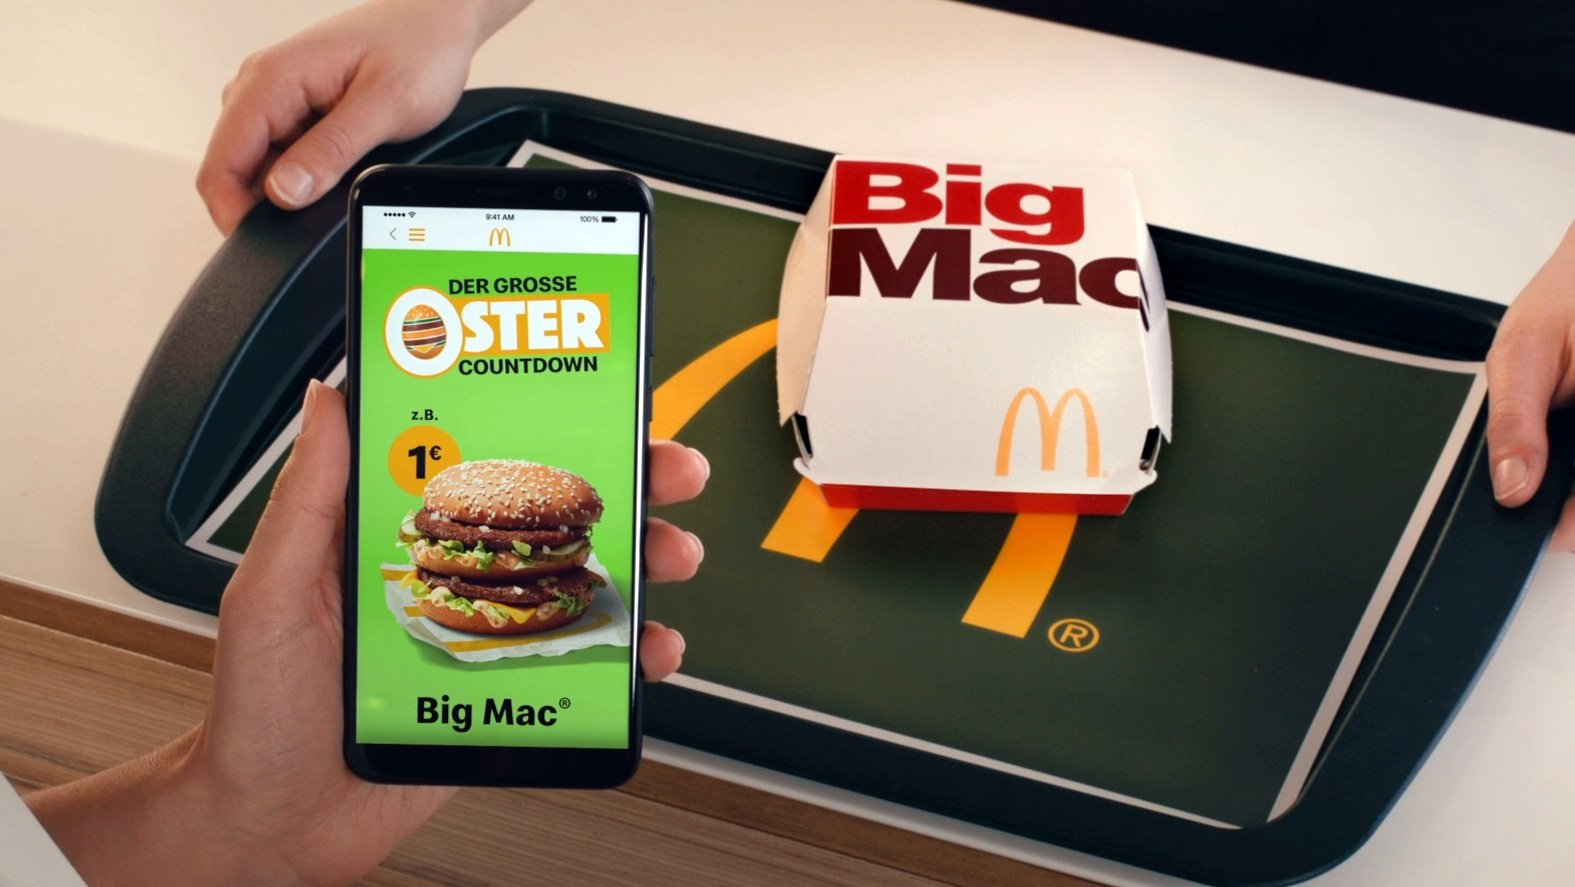 Big Mac Fur 1 Euro Und Mehr Mcdonald S Startet Krasse Oster Aktion